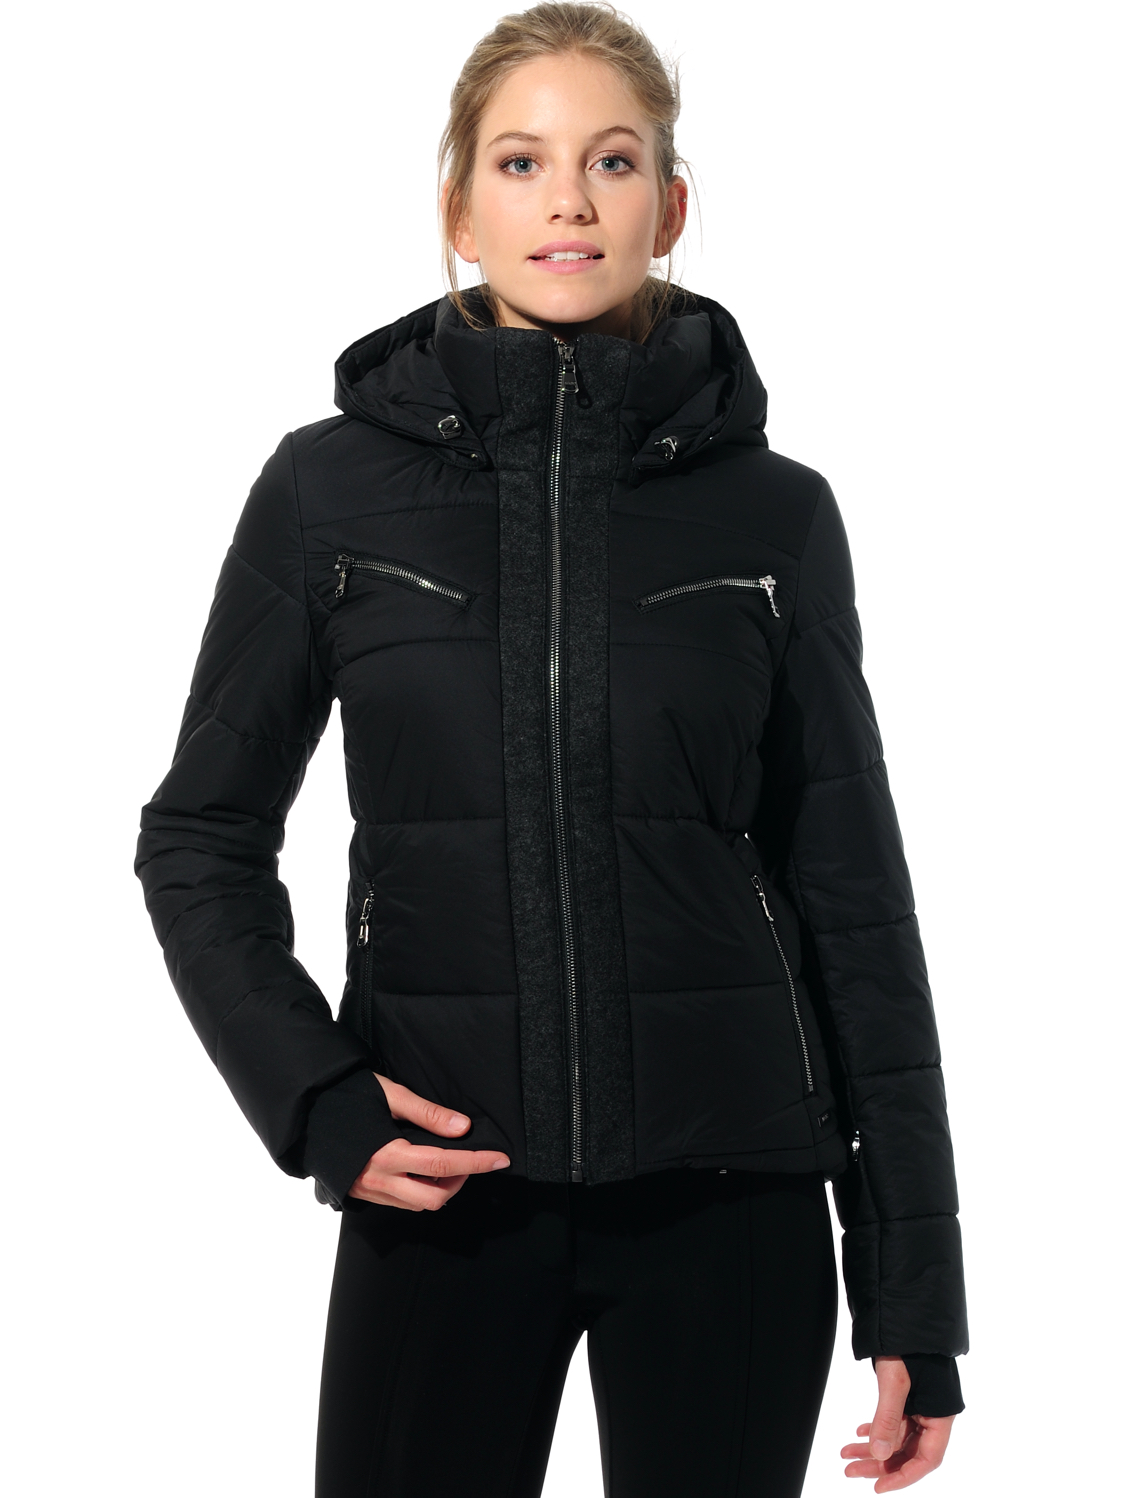 stretch ski jacket black 